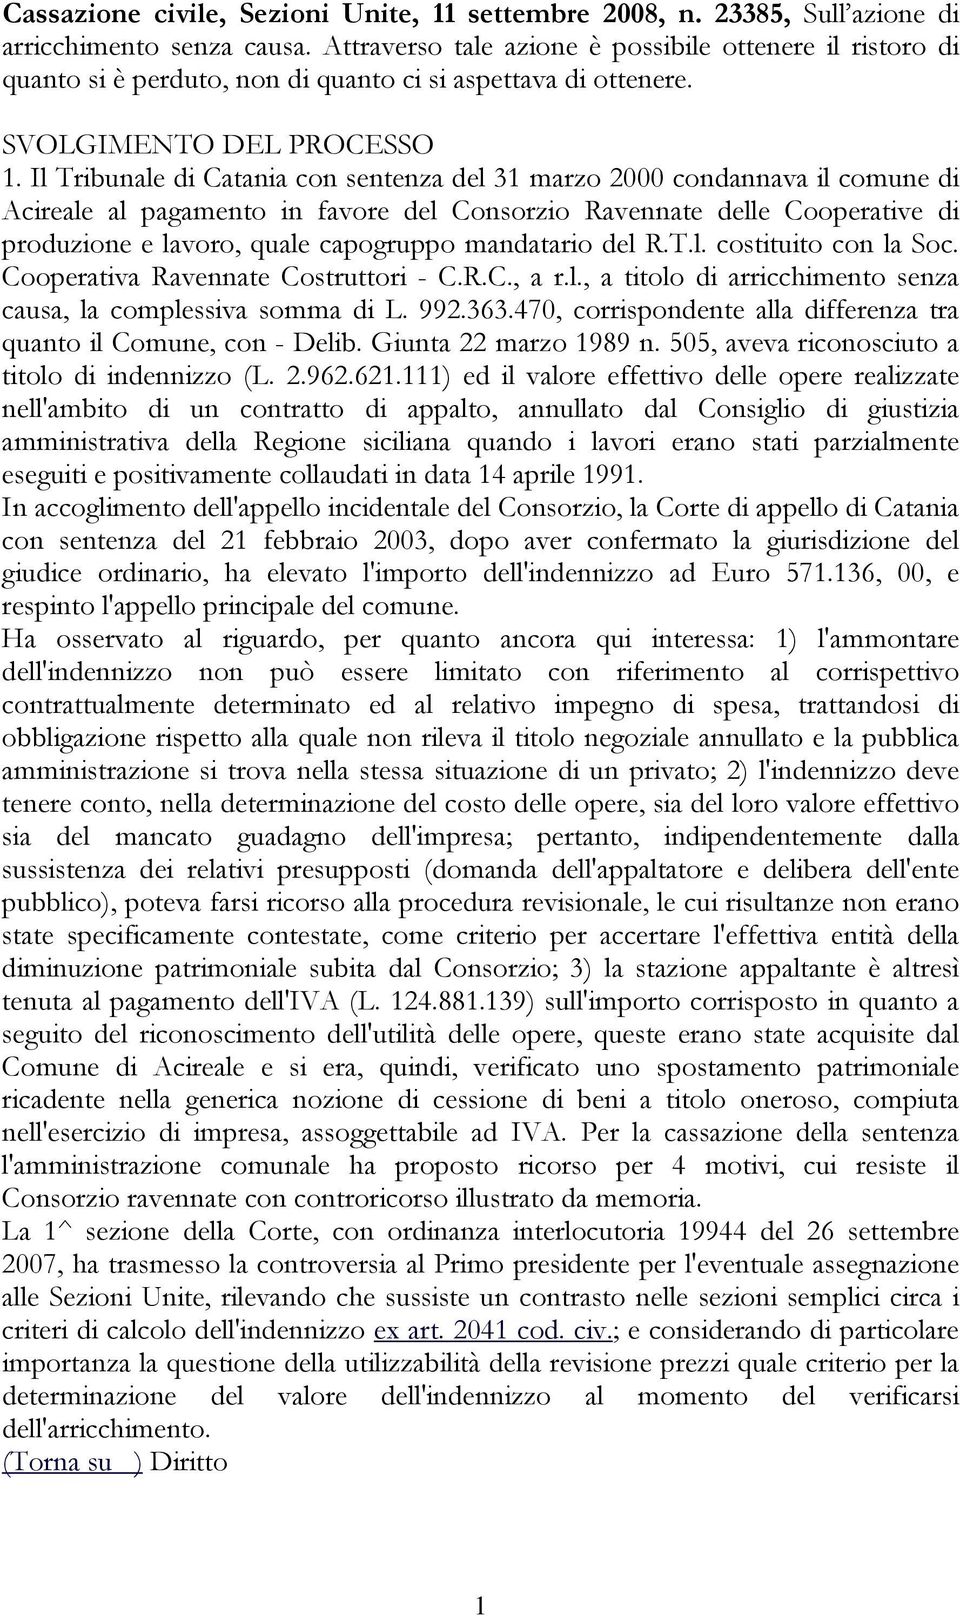 Il Tribunale di Catania con sentenza del 31 marzo 2000 condannava il comune di Acireale al pagamento in favore del Consorzio Ravennate delle Cooperative di produzione e lavoro, quale capogruppo